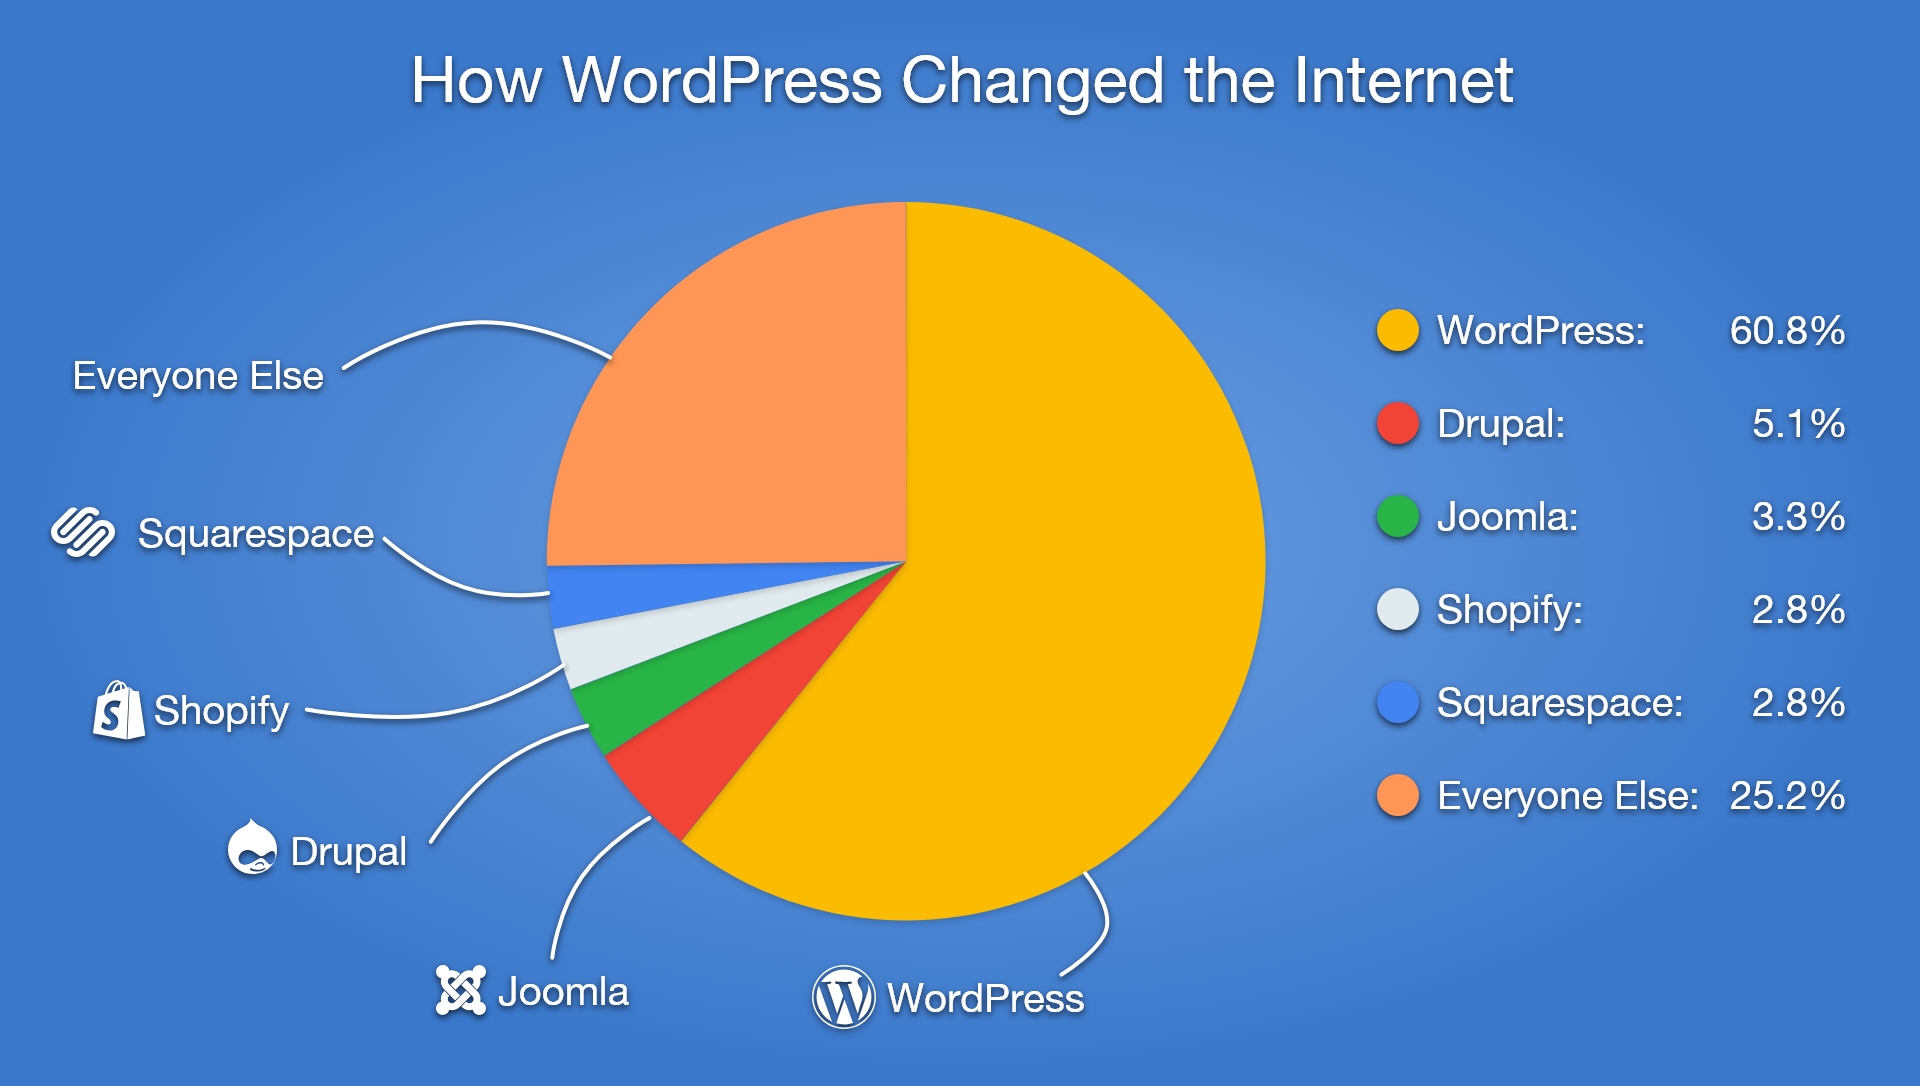 Growth In WordPress Use